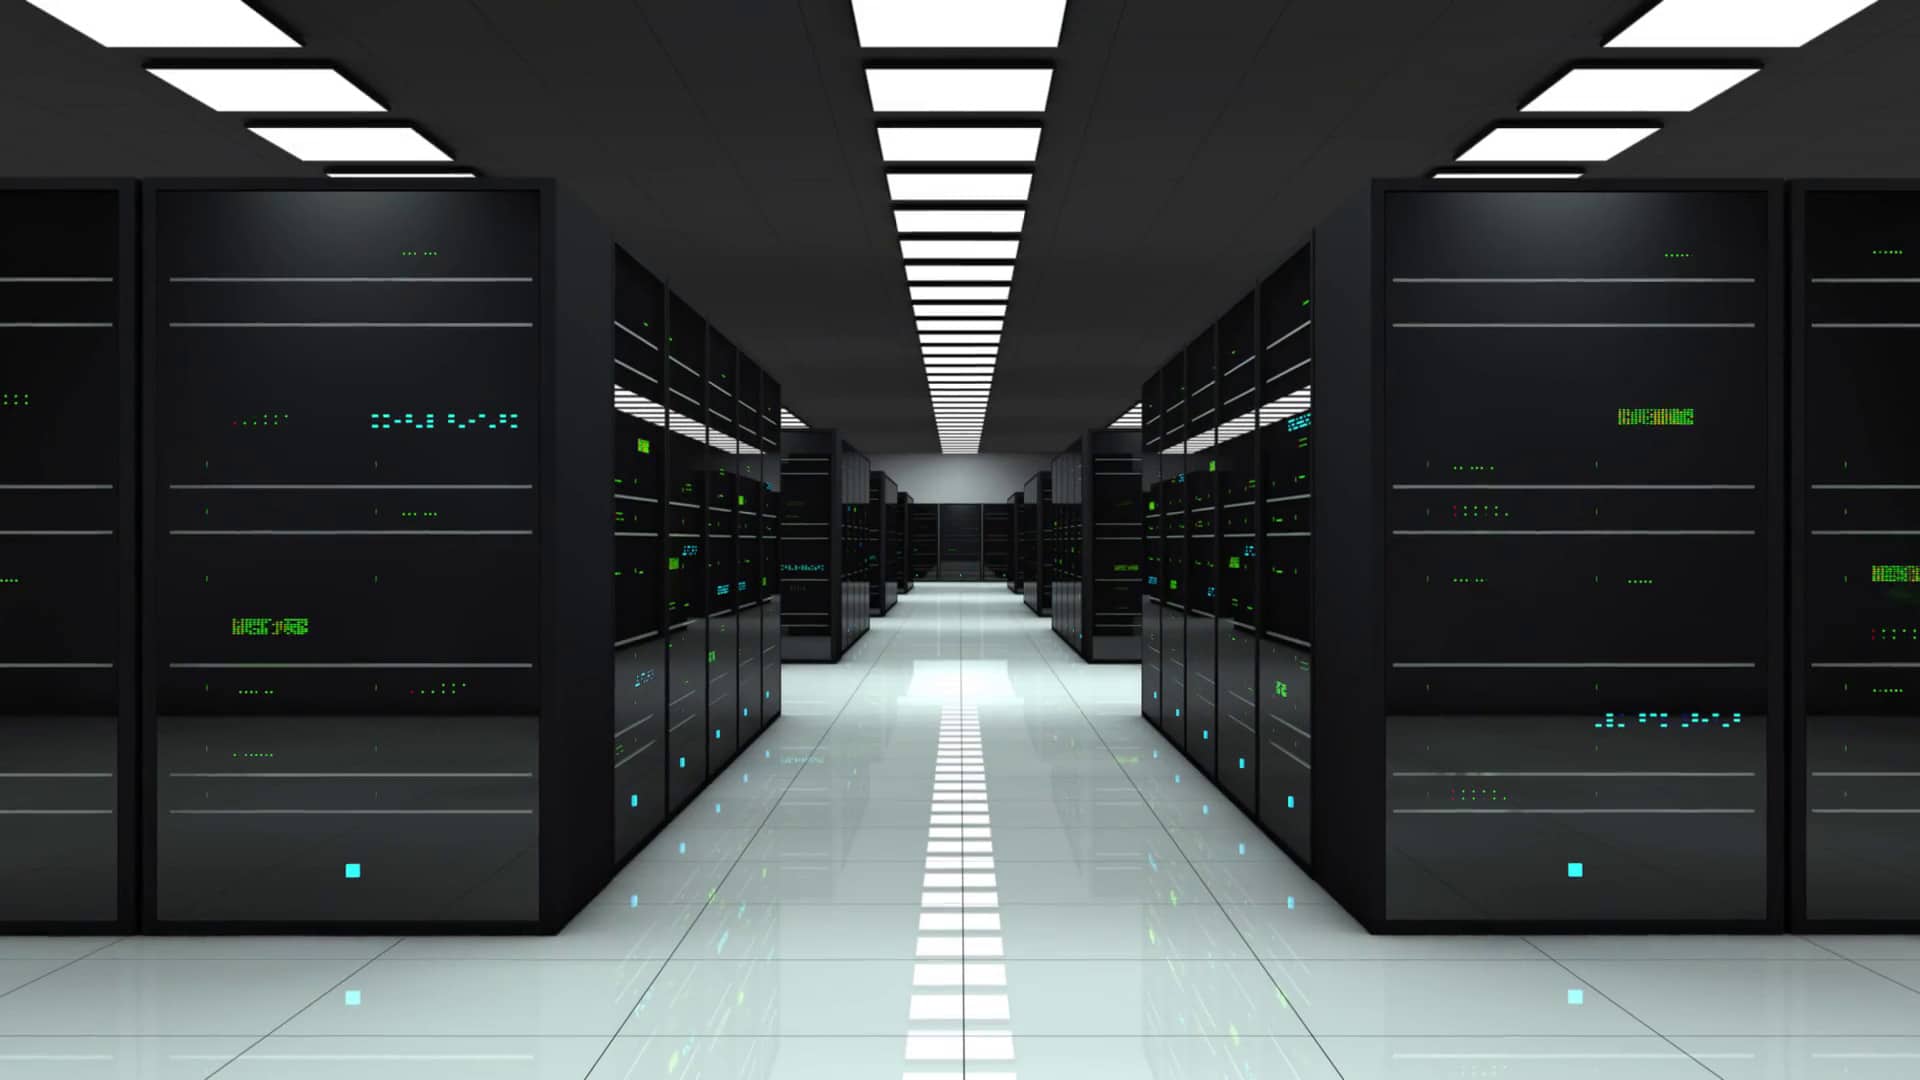 filemaker server hosting services